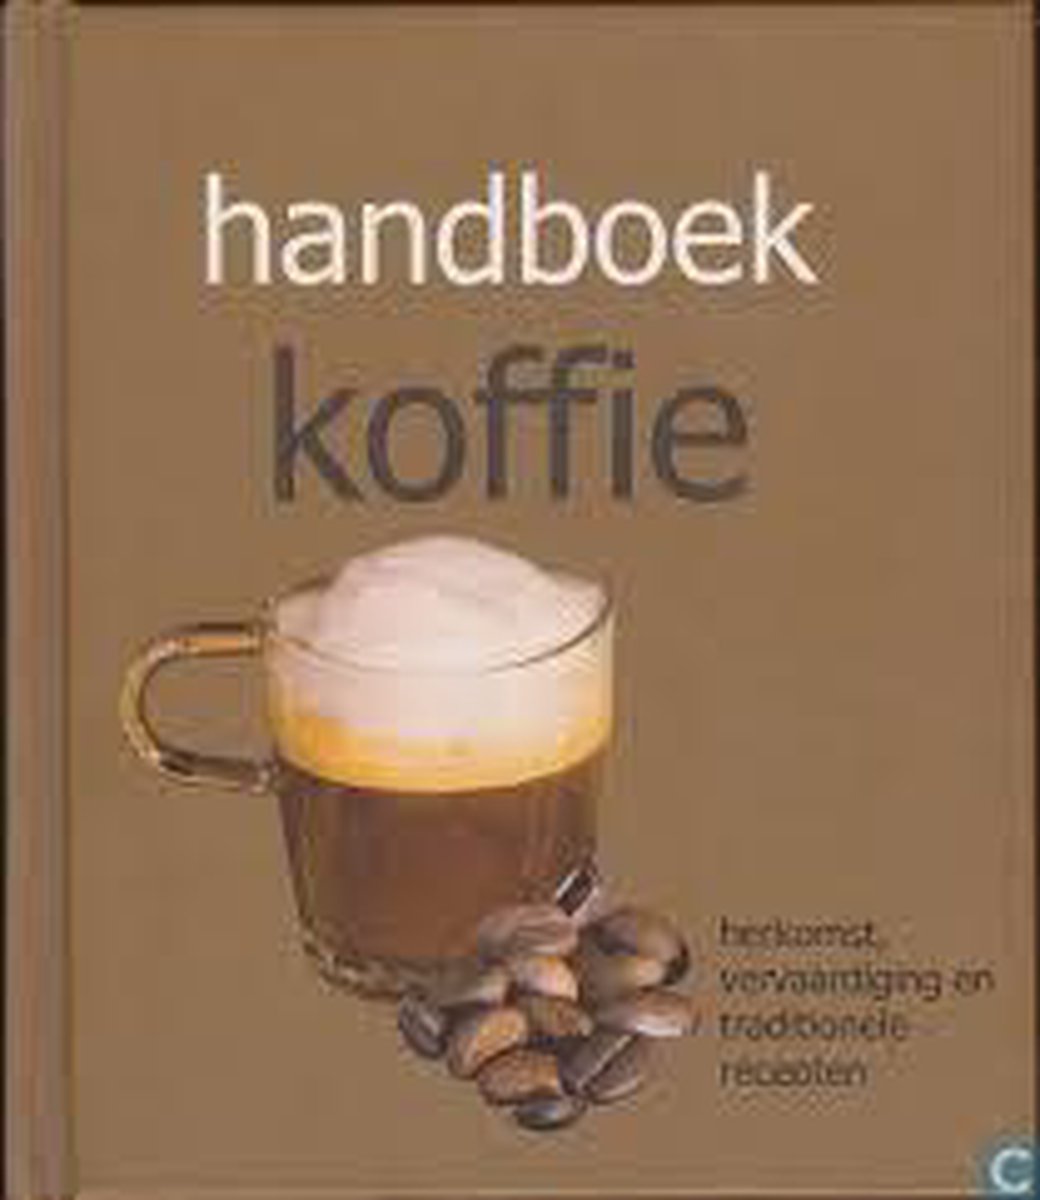 Handboek koffie